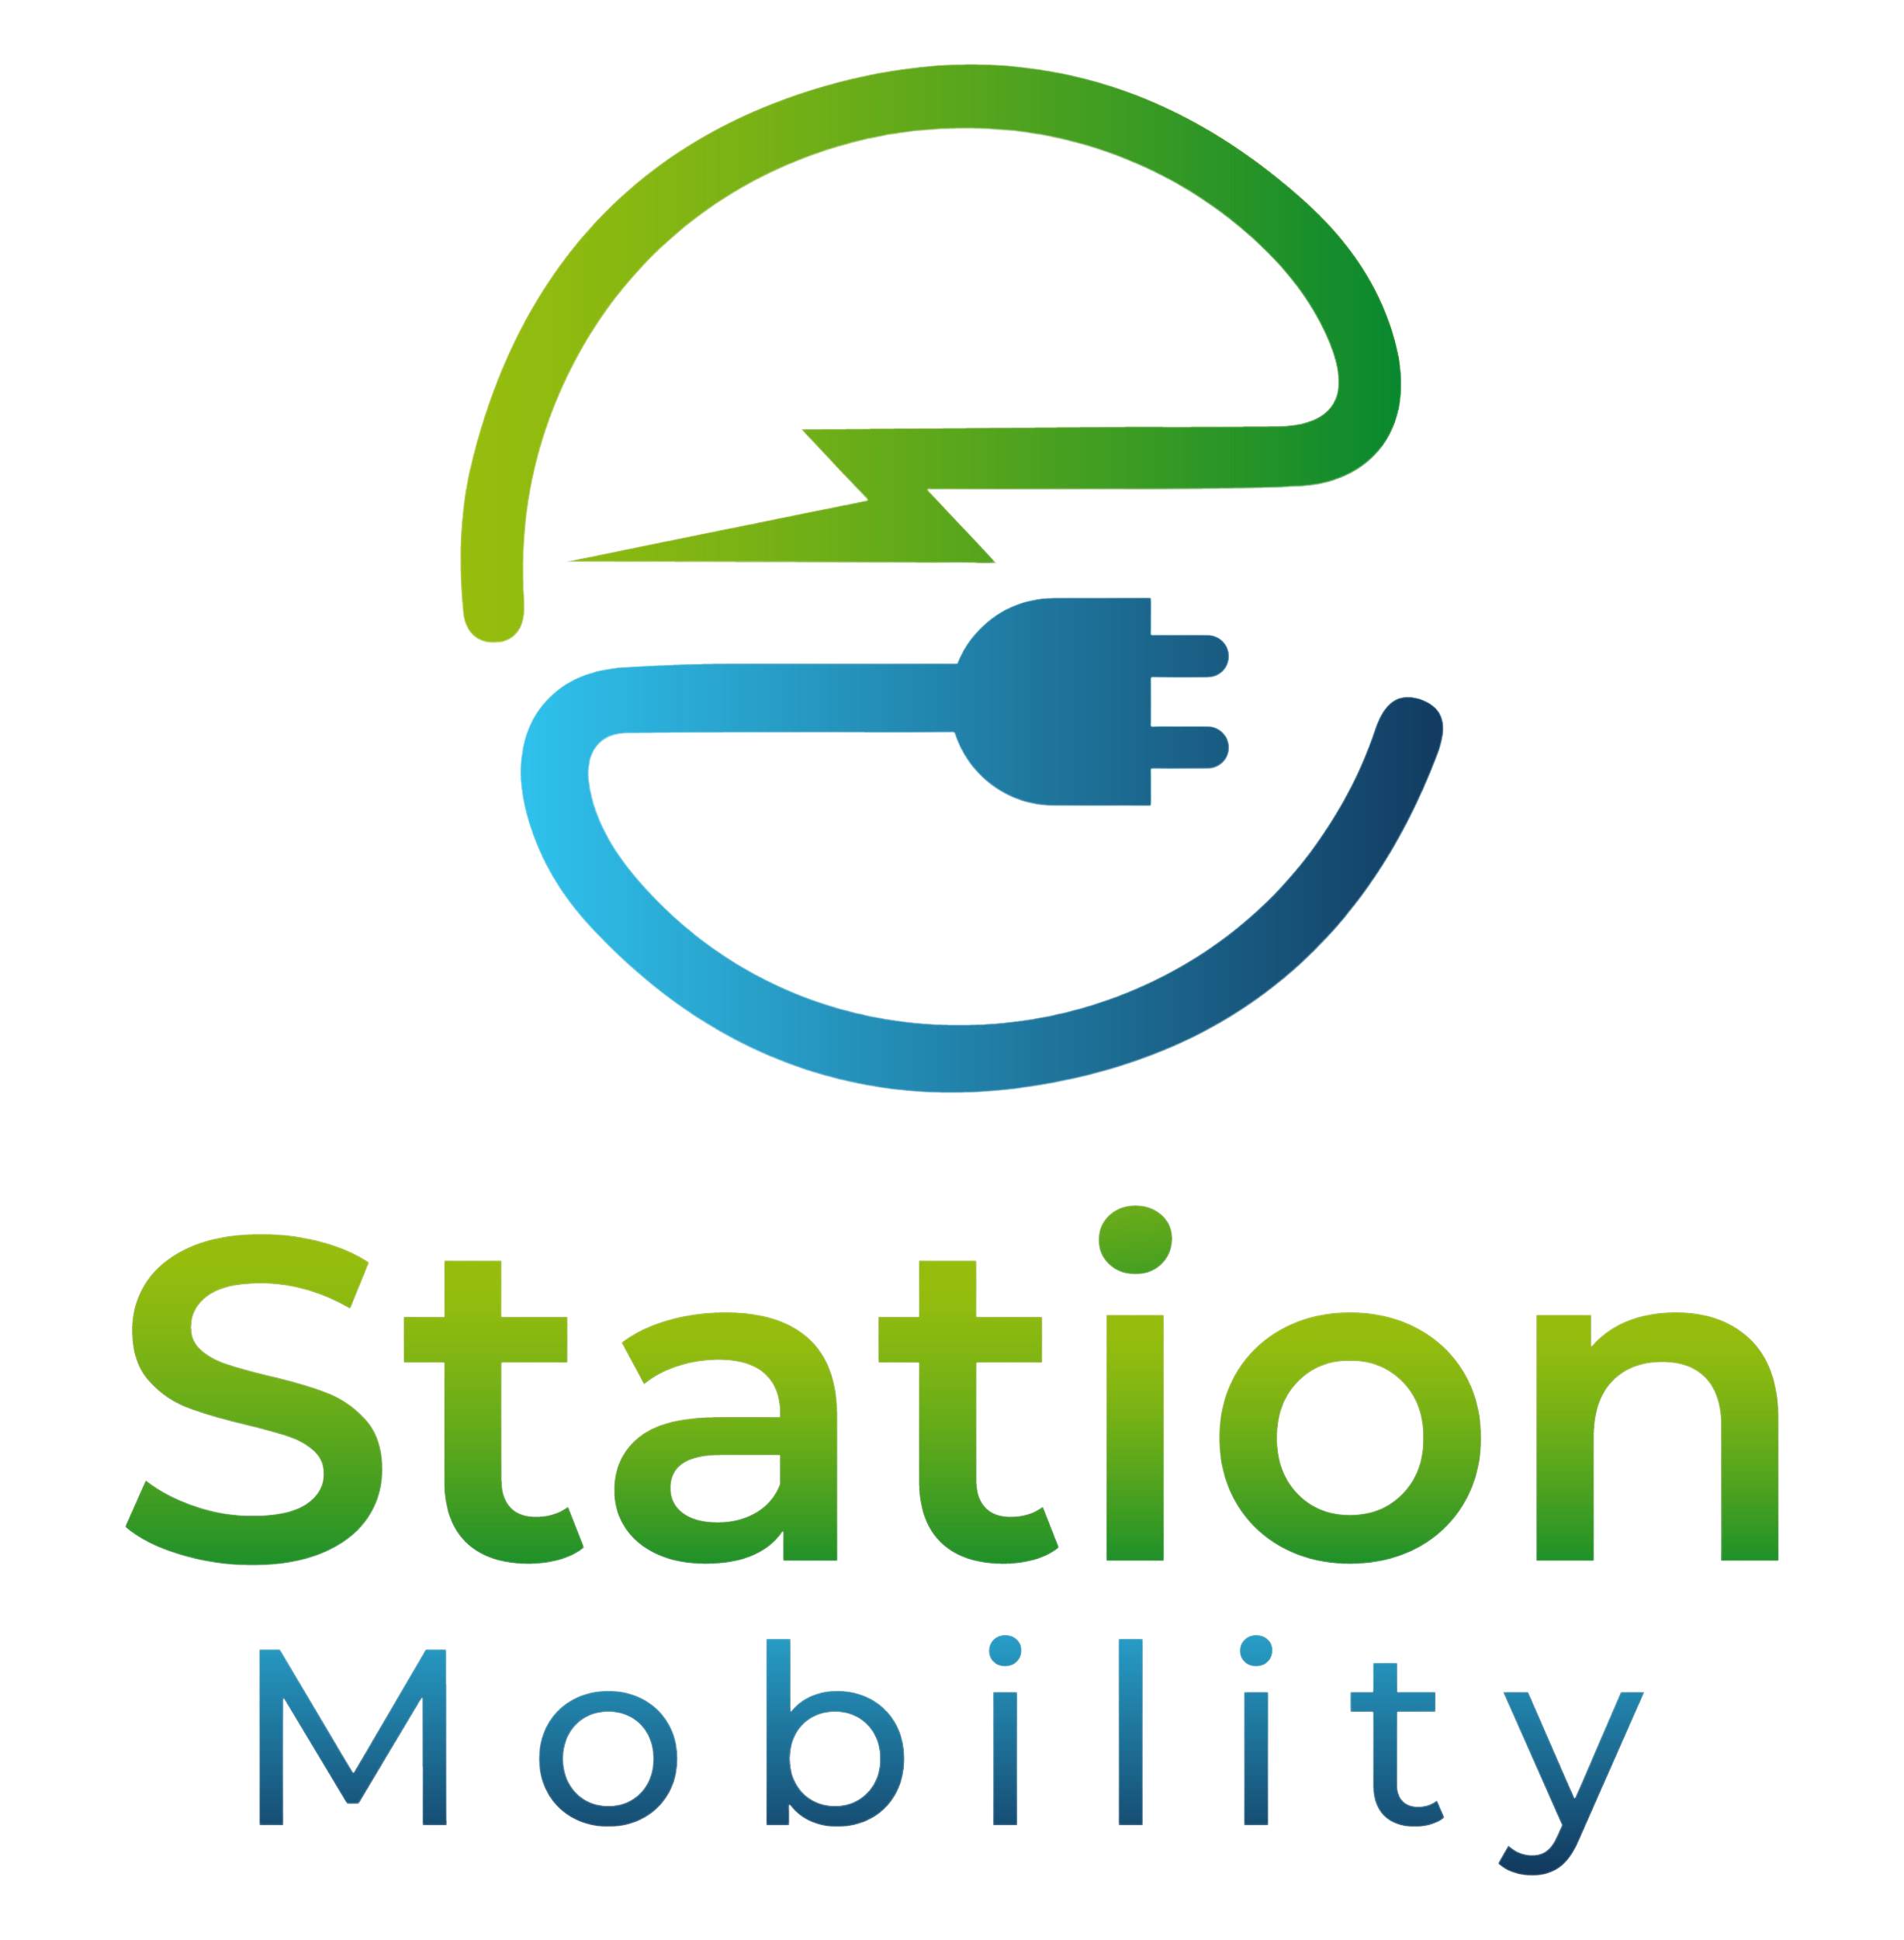 e-Station Mobility